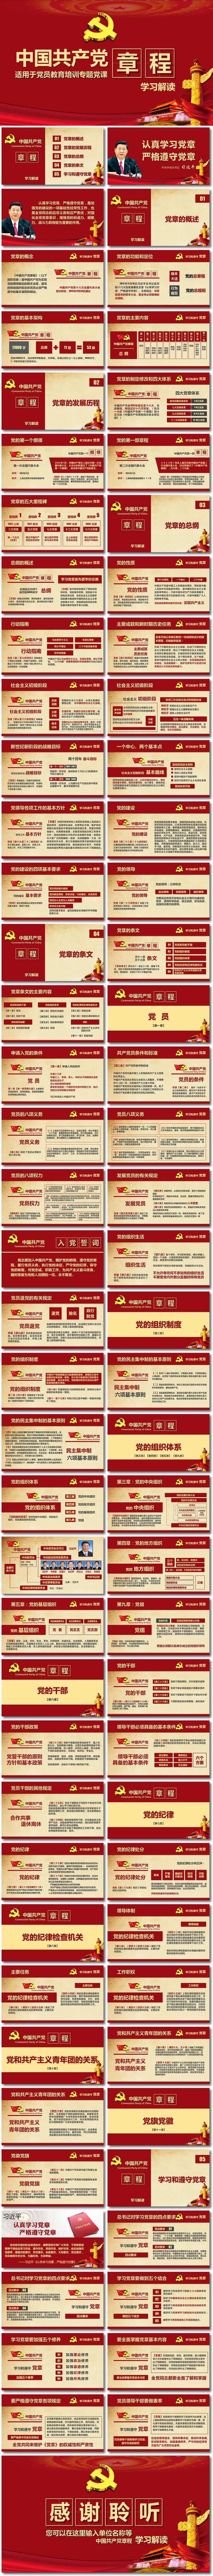 【党章】中国共产党章程 学习解读 详细文字解读可直接使用